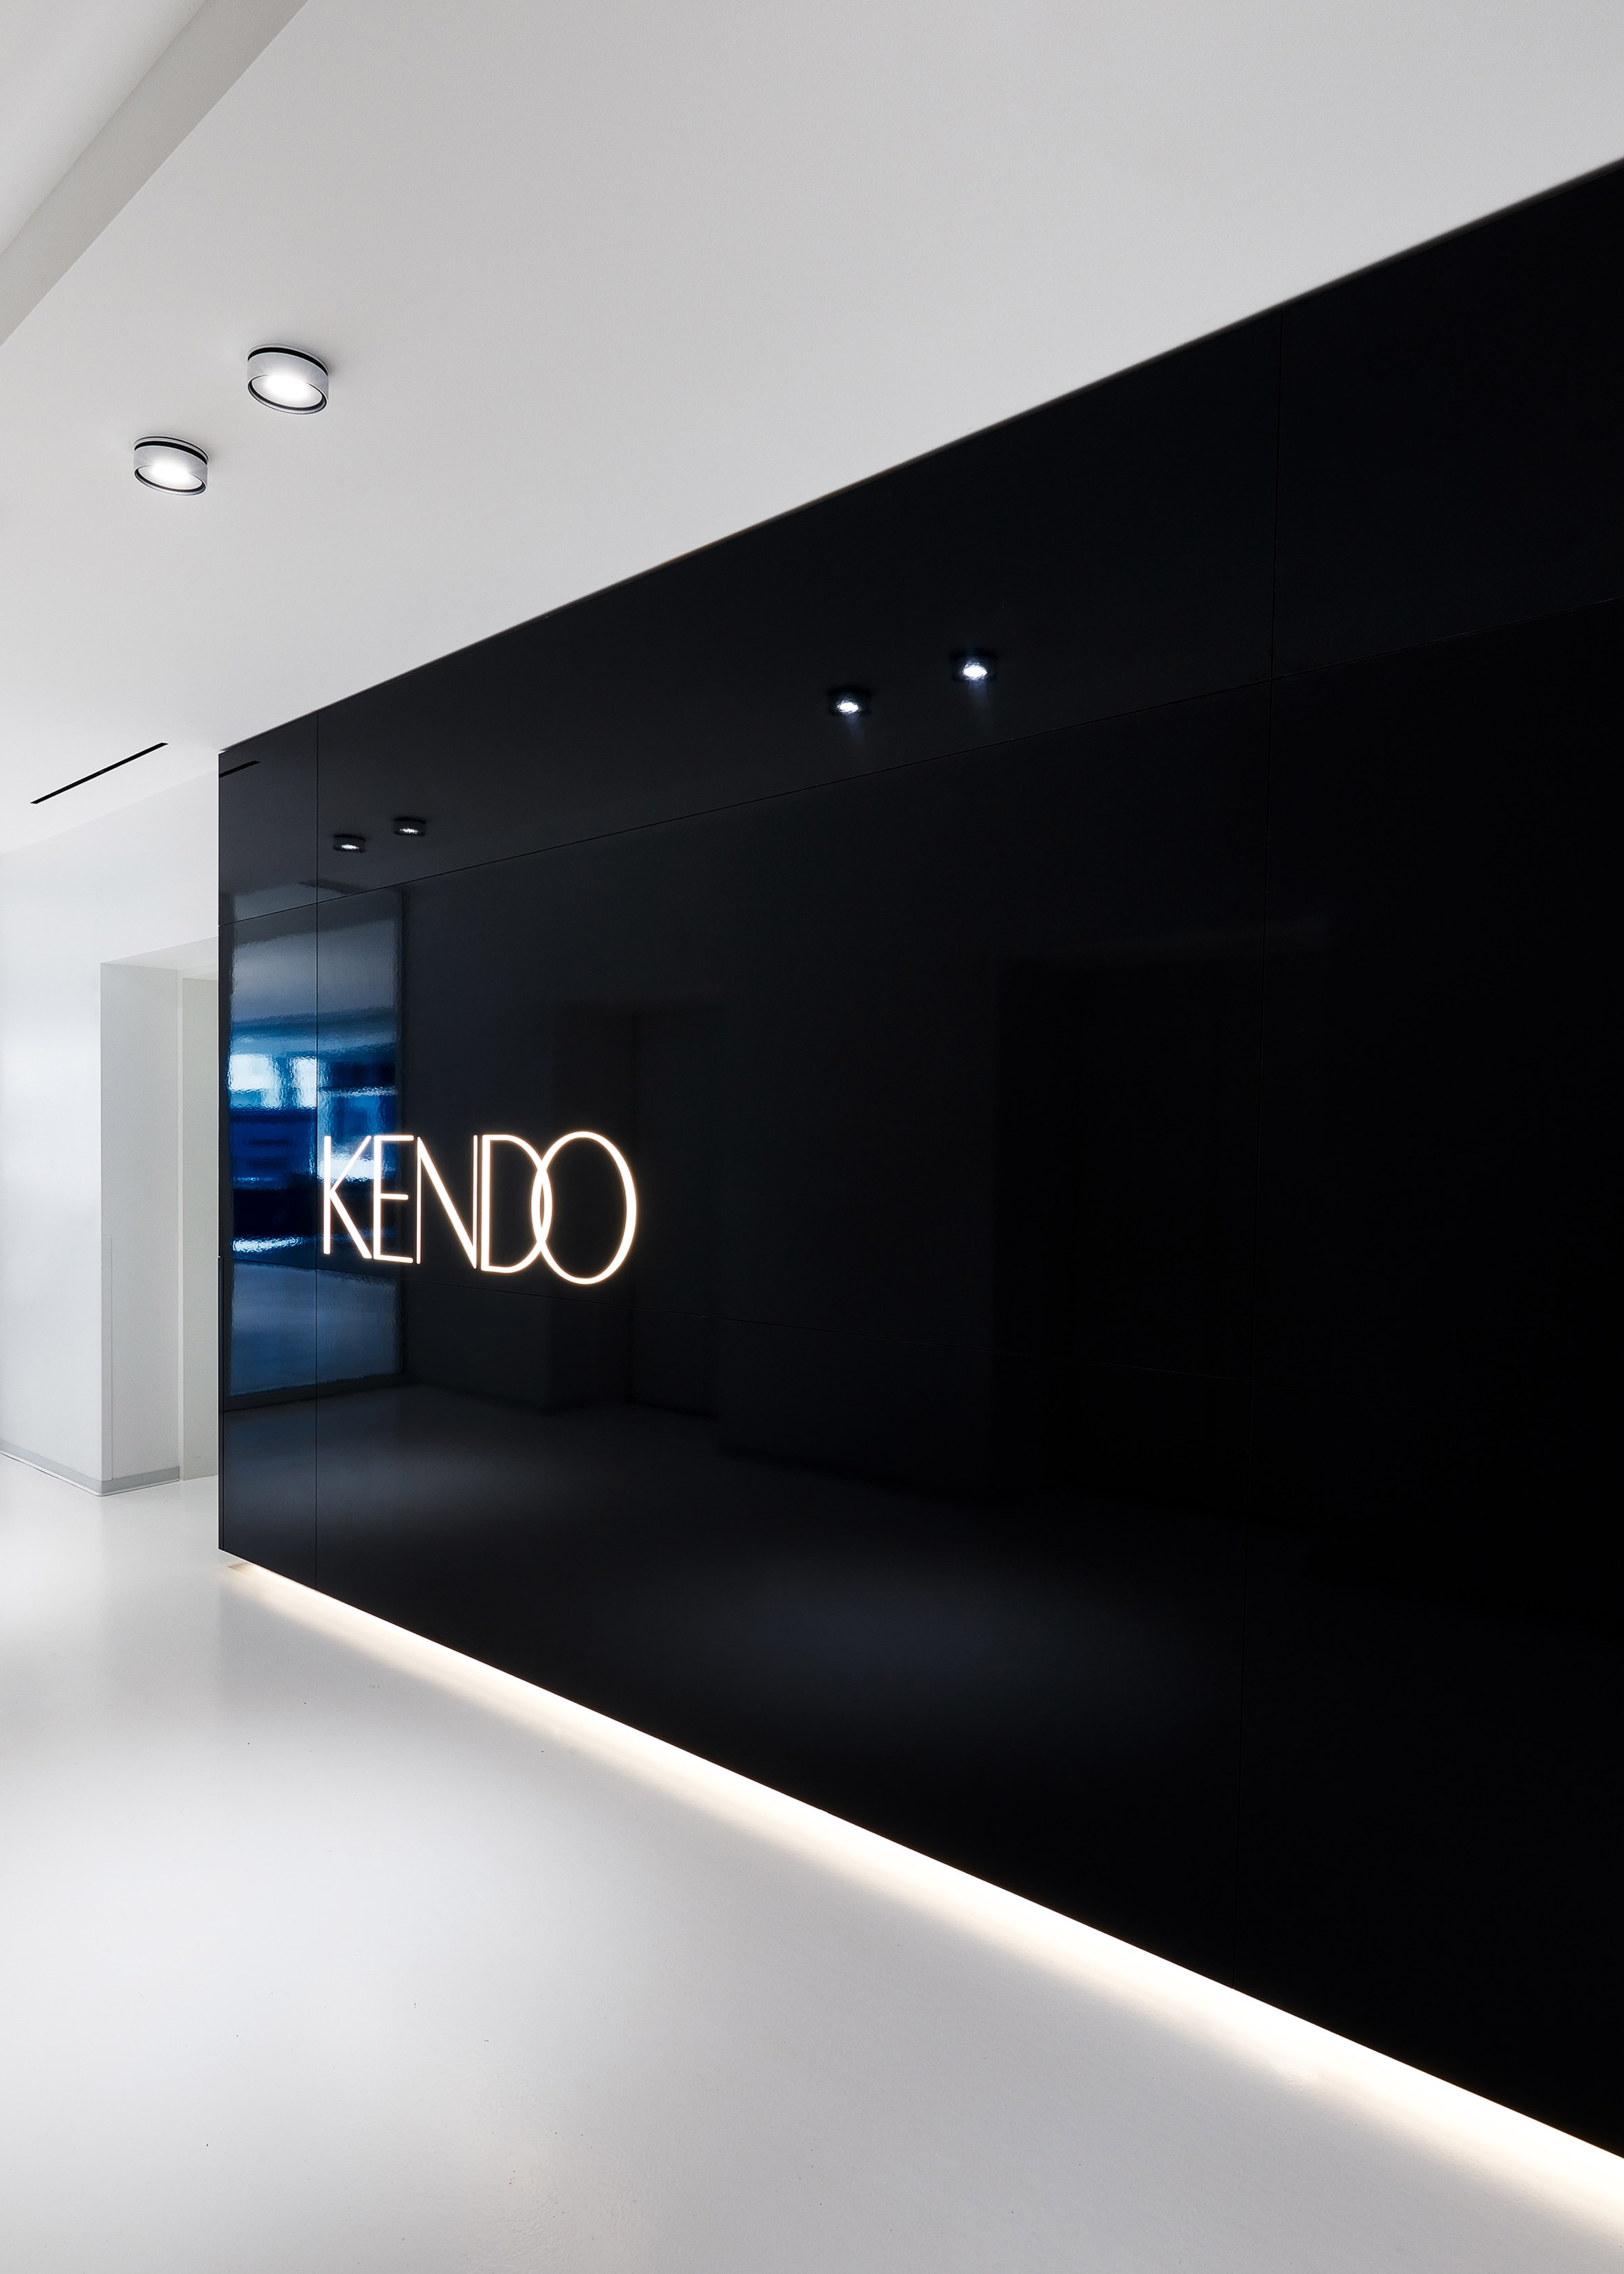 Kendo by Garcia Tamjidi Architecture and Design